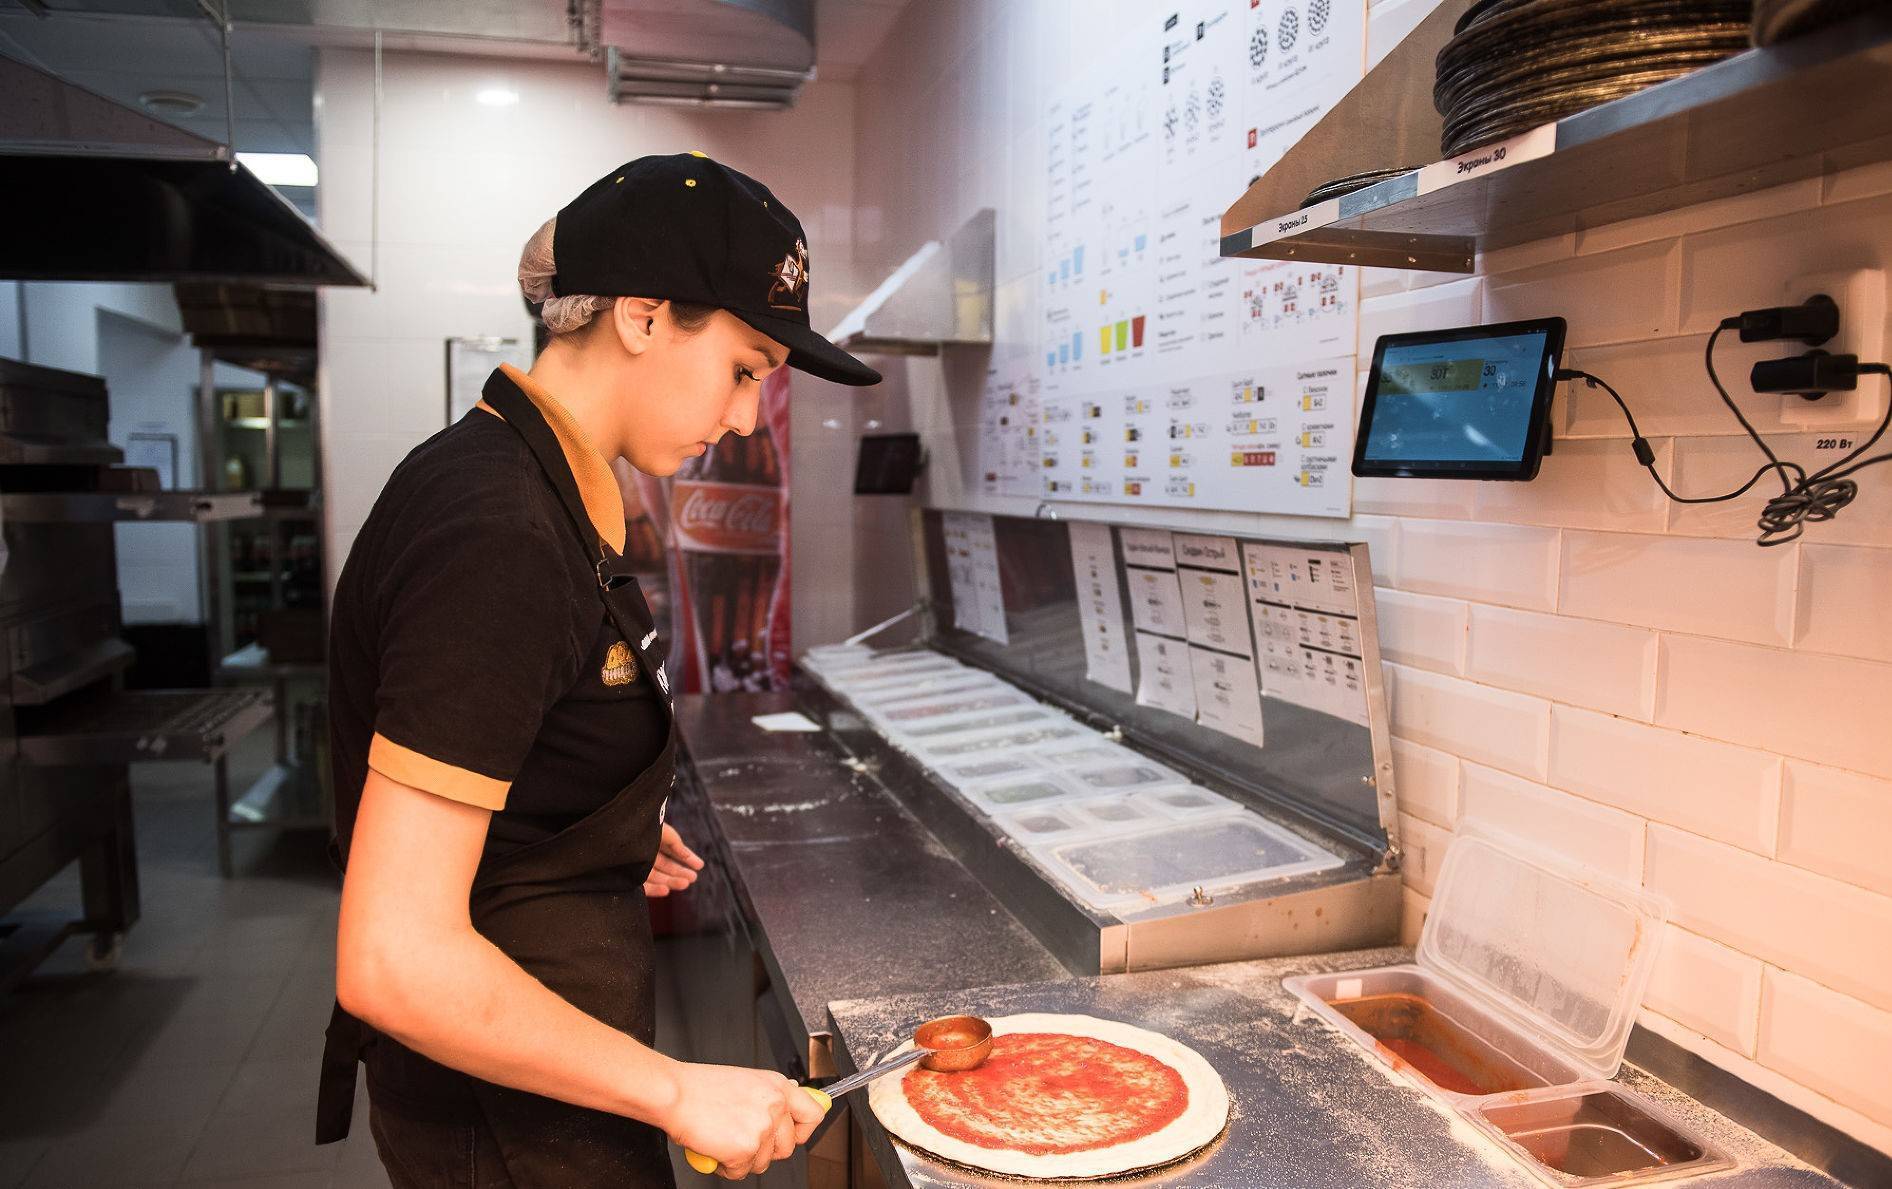 Додо пицца — франшиза по лучшим условиям